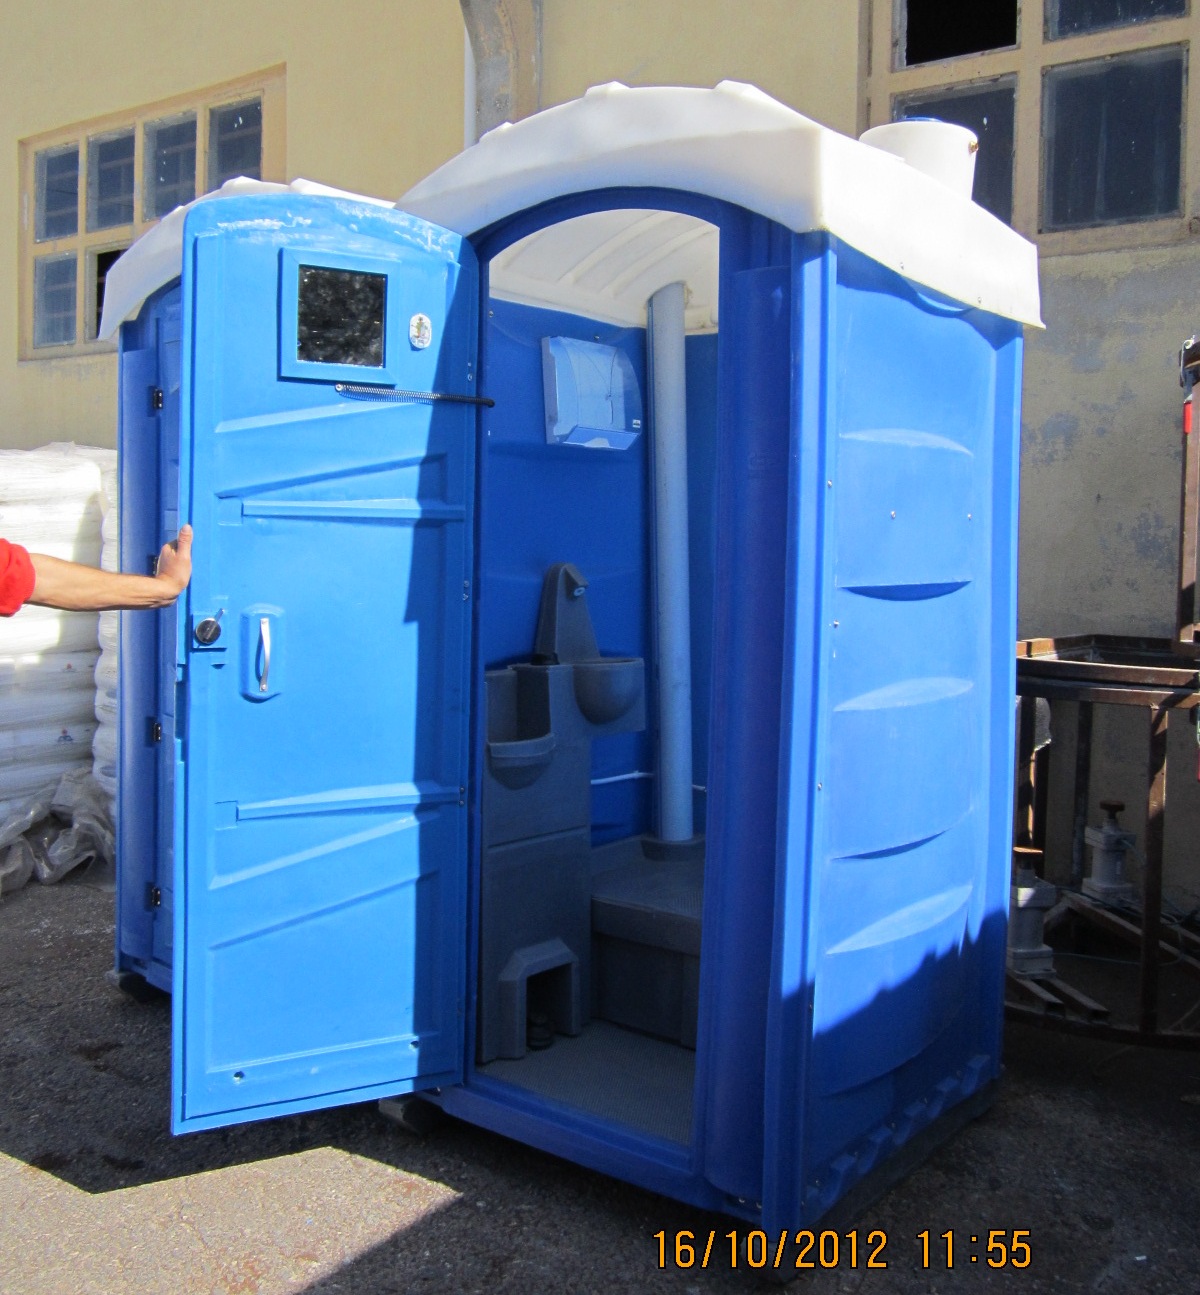 derya prefabrik kabin san tic ltd sti seyyar tuvalet kabini ihracat firmasi seyyar dus kabini ihracat sirketi turkishexporter turkishexporter com tr